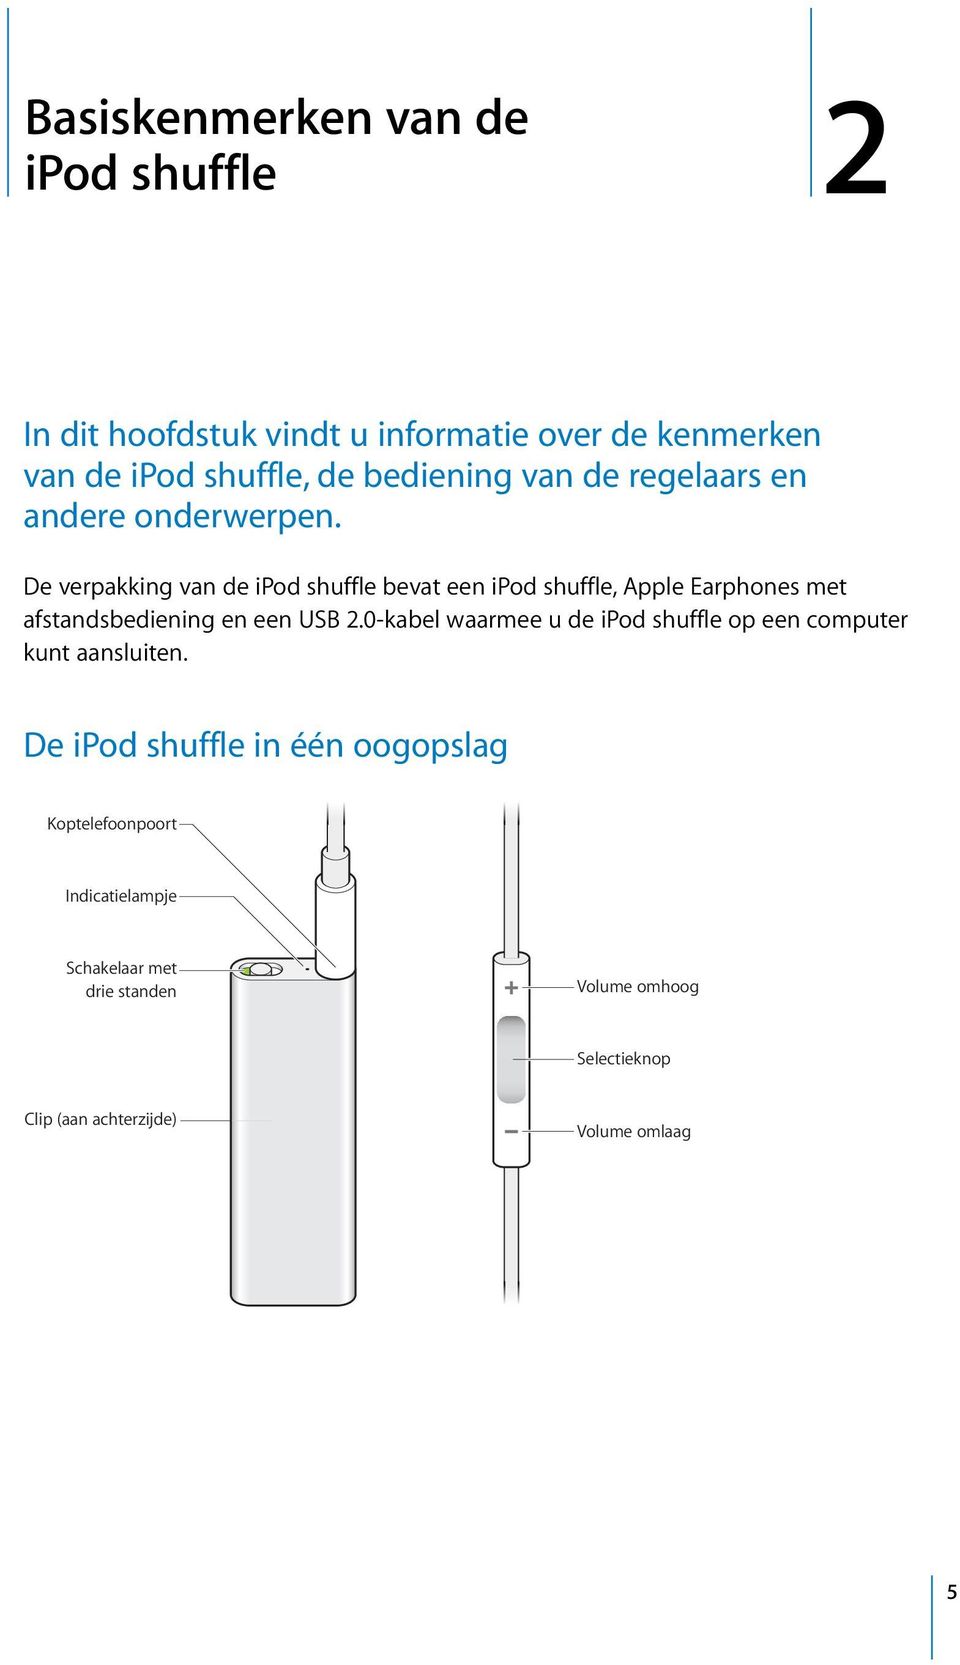 De verpakking van de ipod shuffle bevat een ipod shuffle, Apple Earphones met afstandsbediening en een USB 2.